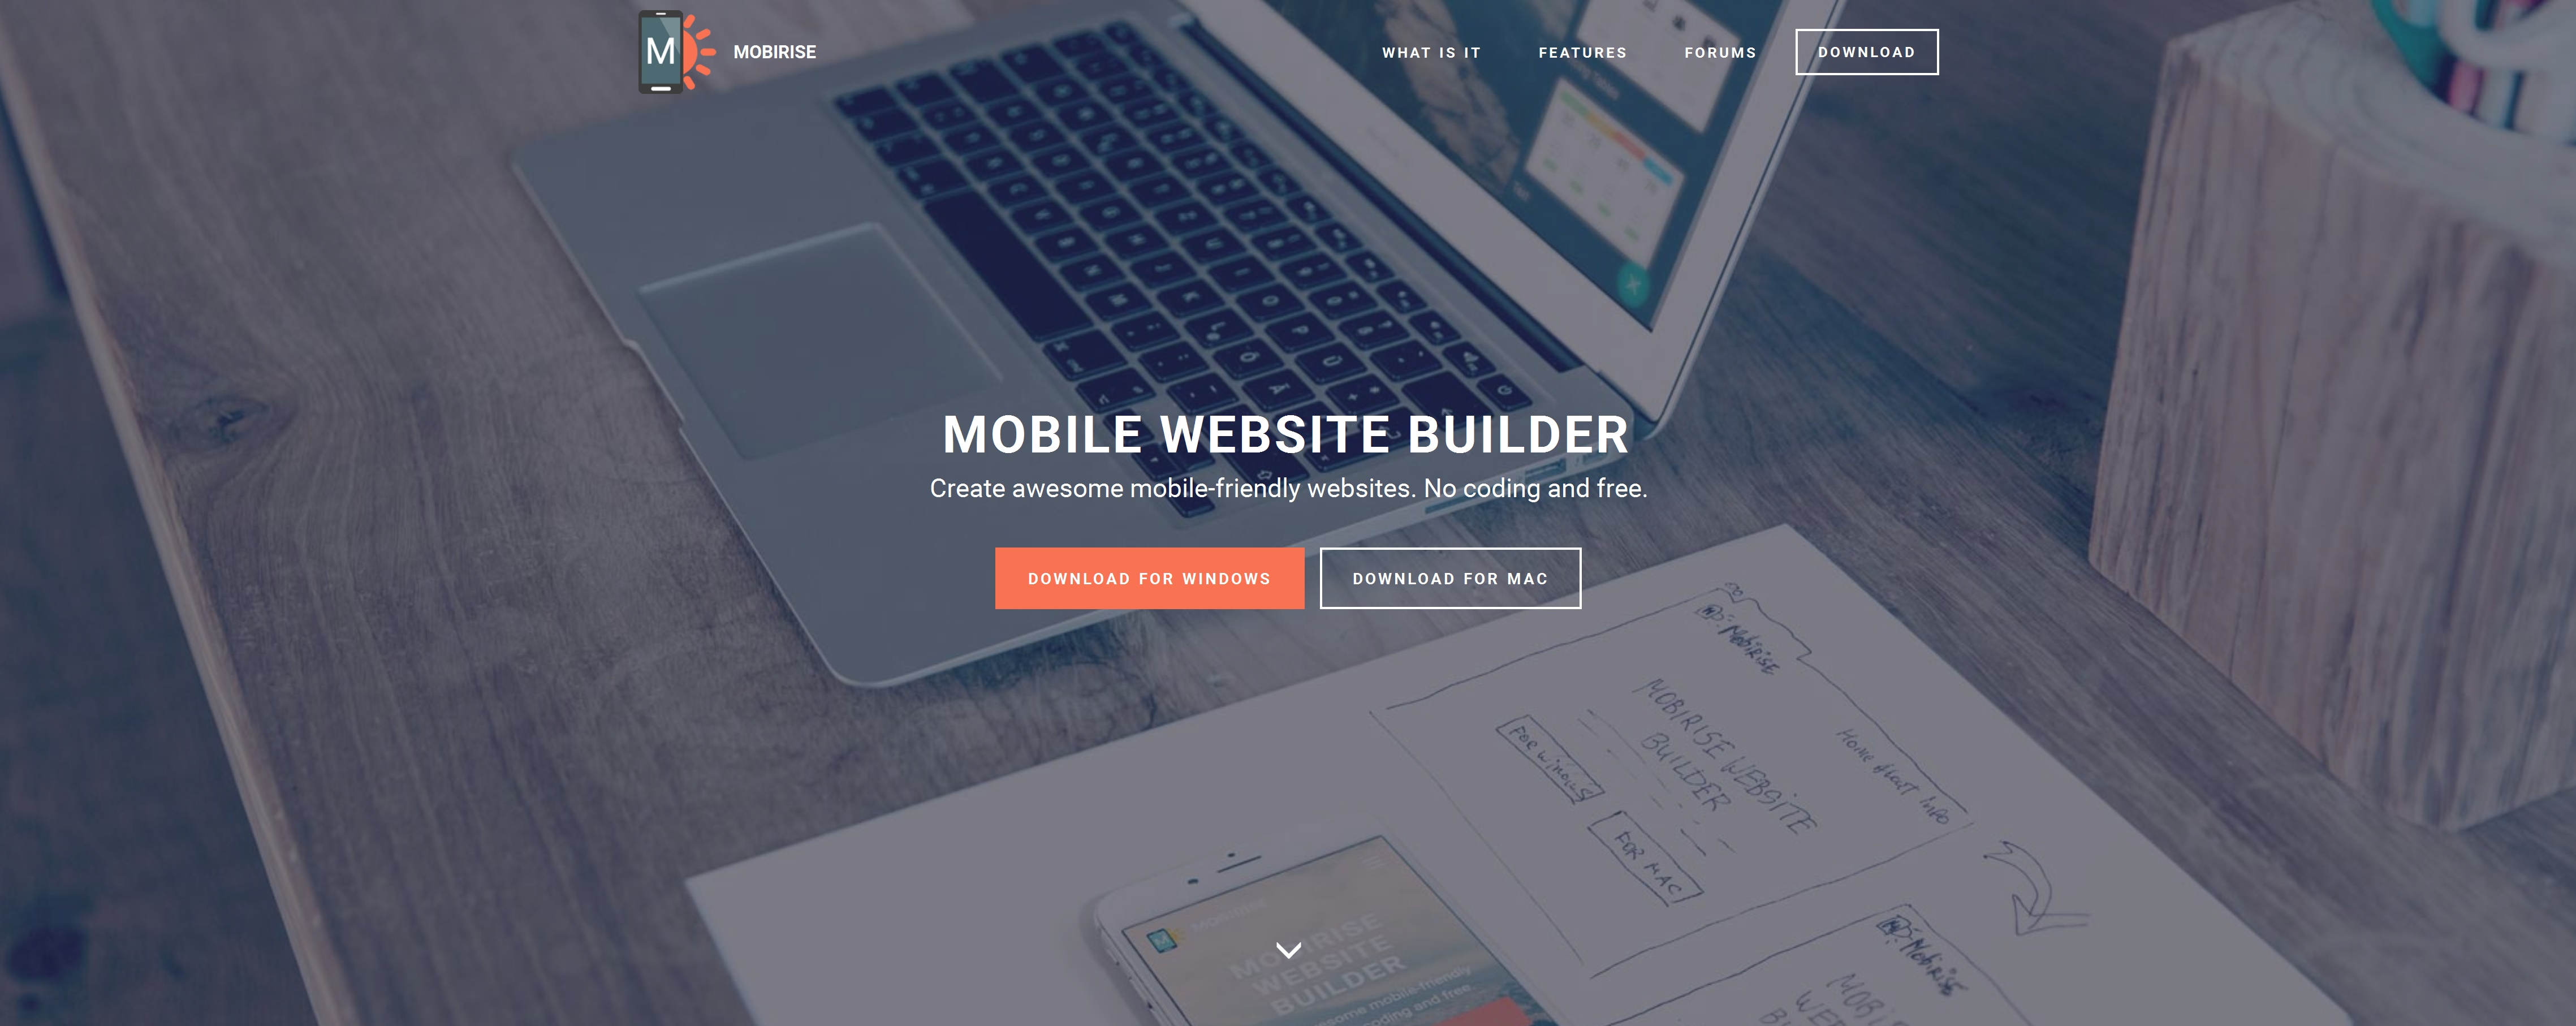 Free Mobile Website Builder Software